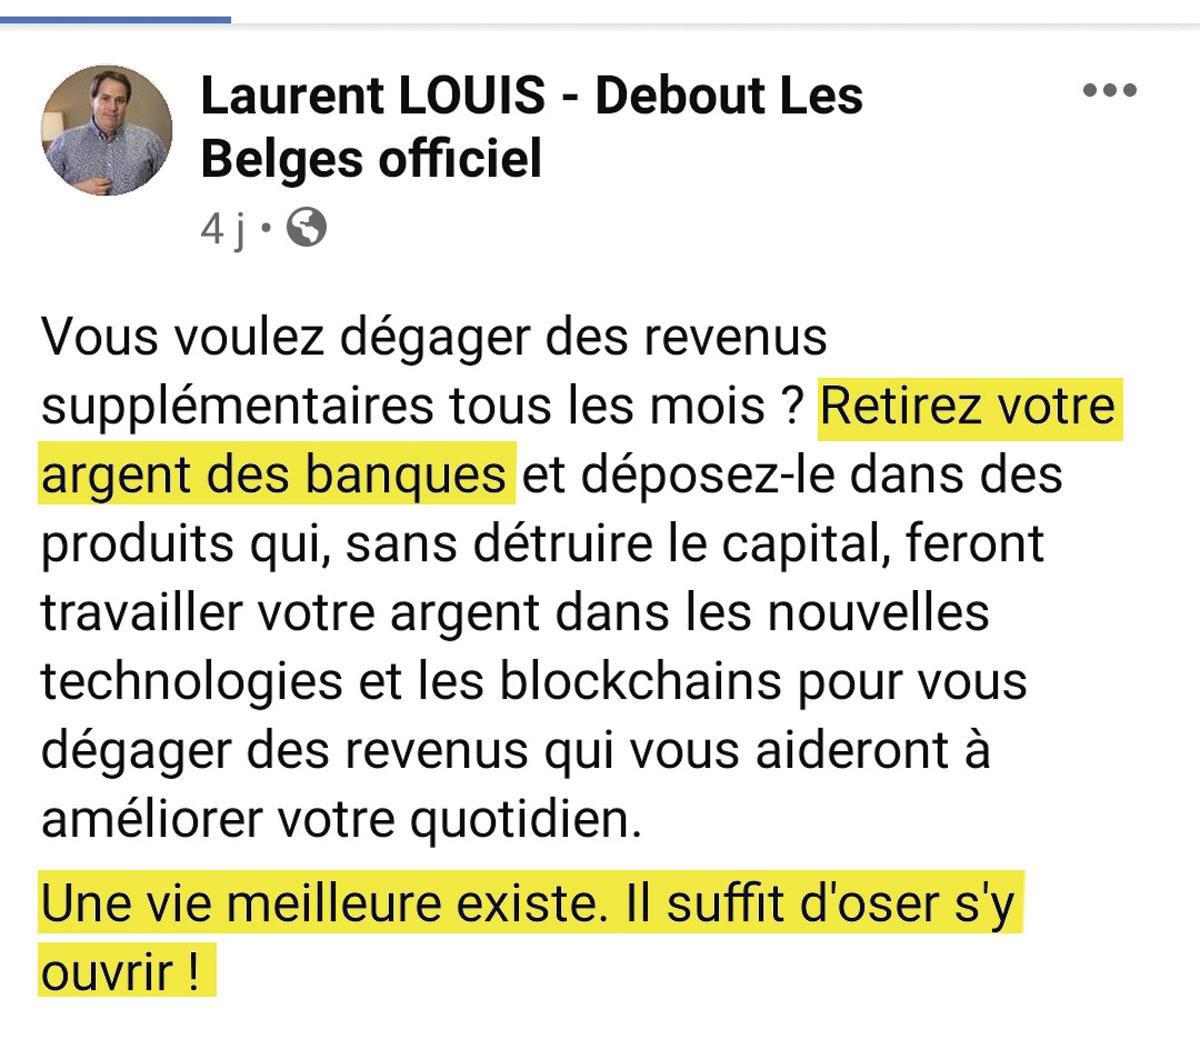 Le 3 décembre 2020, Laurent Louis poste plusieurs messages publics sur sa page Facebook, incitant les investisseurs à placer leur argent dans des 